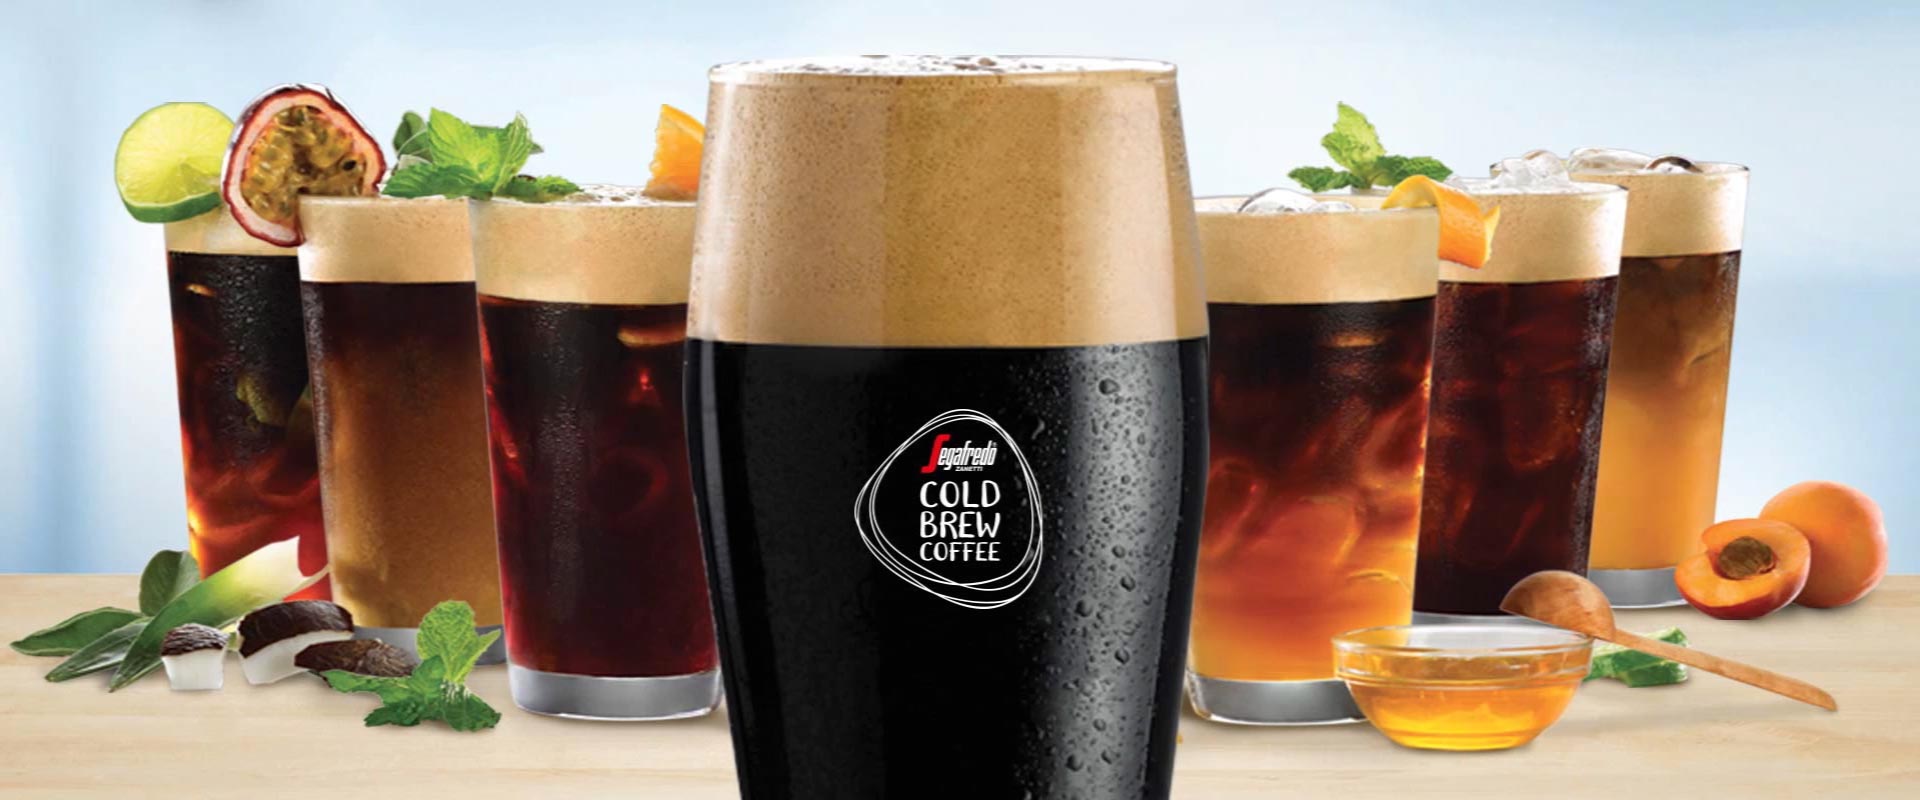 Cold Brew Coffee, Segafredo new launch project